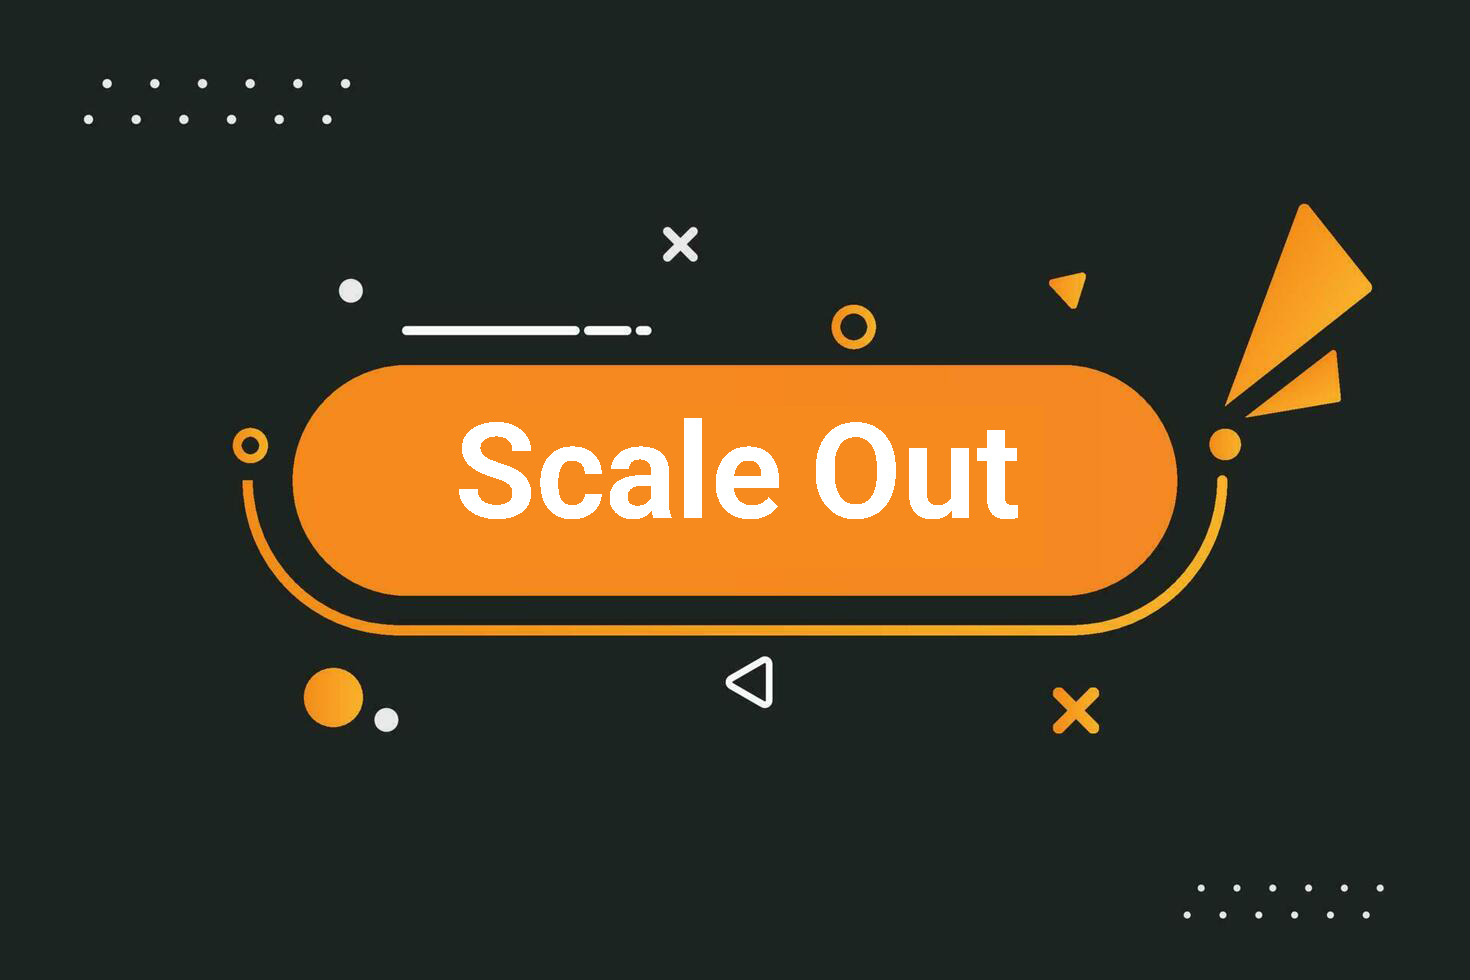 آشنایی با Scale Out (بین Scale Up و Scale Out کدام یک را انتخاب کنیم؟)